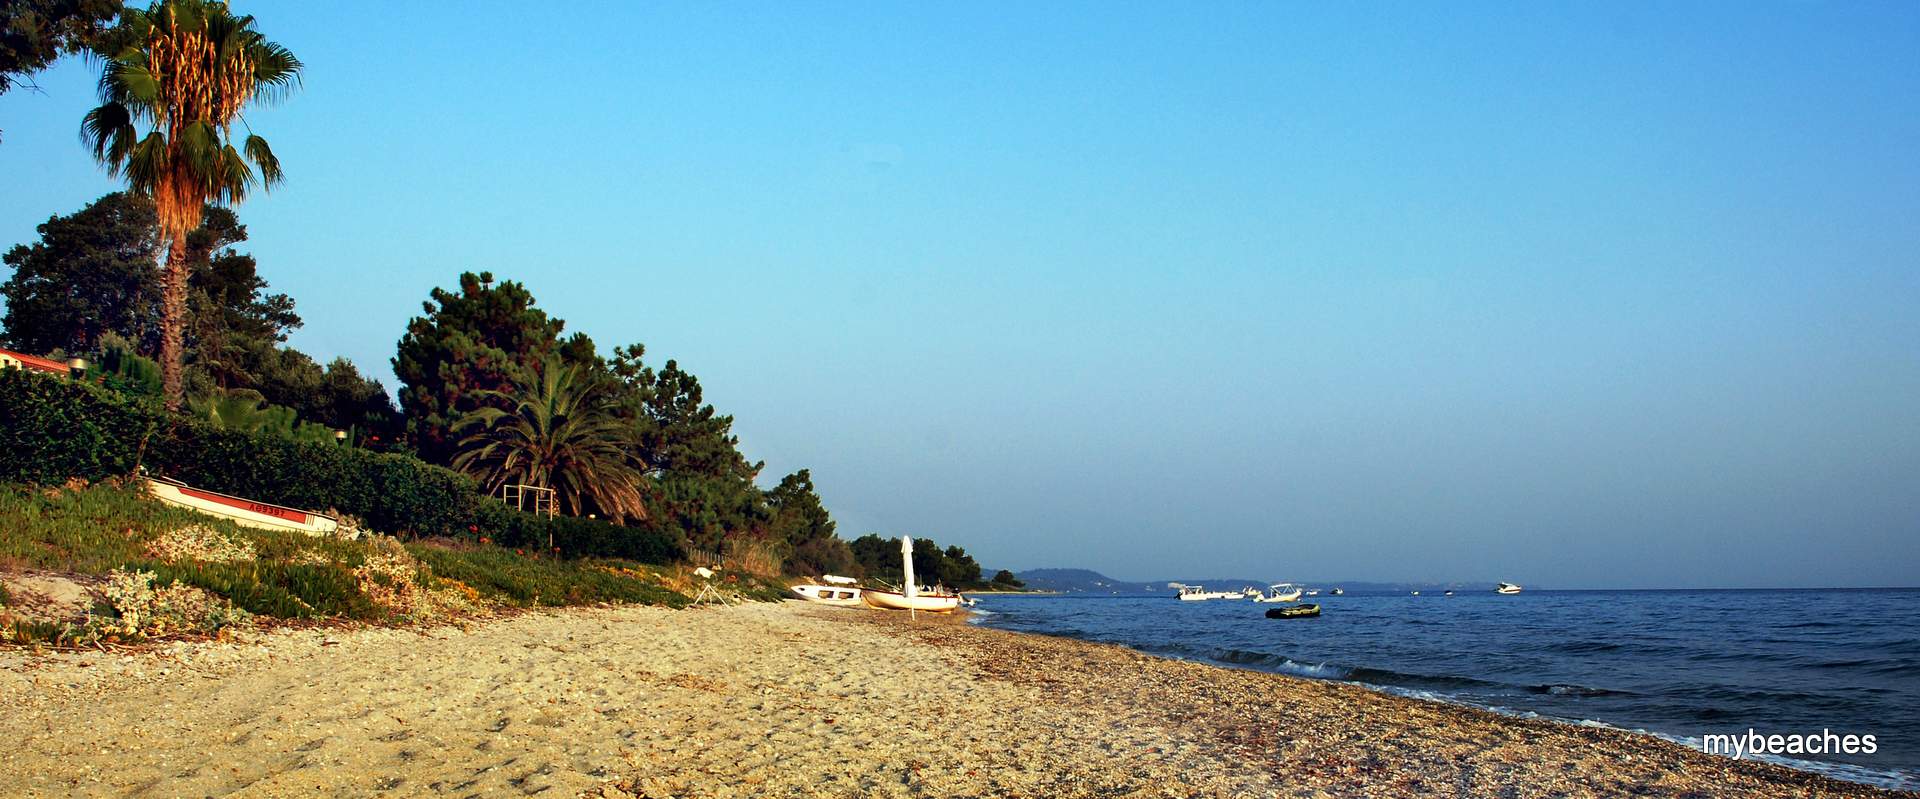 Αύρα παραλία, Κασσάνδρα, Χαλκιδική, Ελλάδα